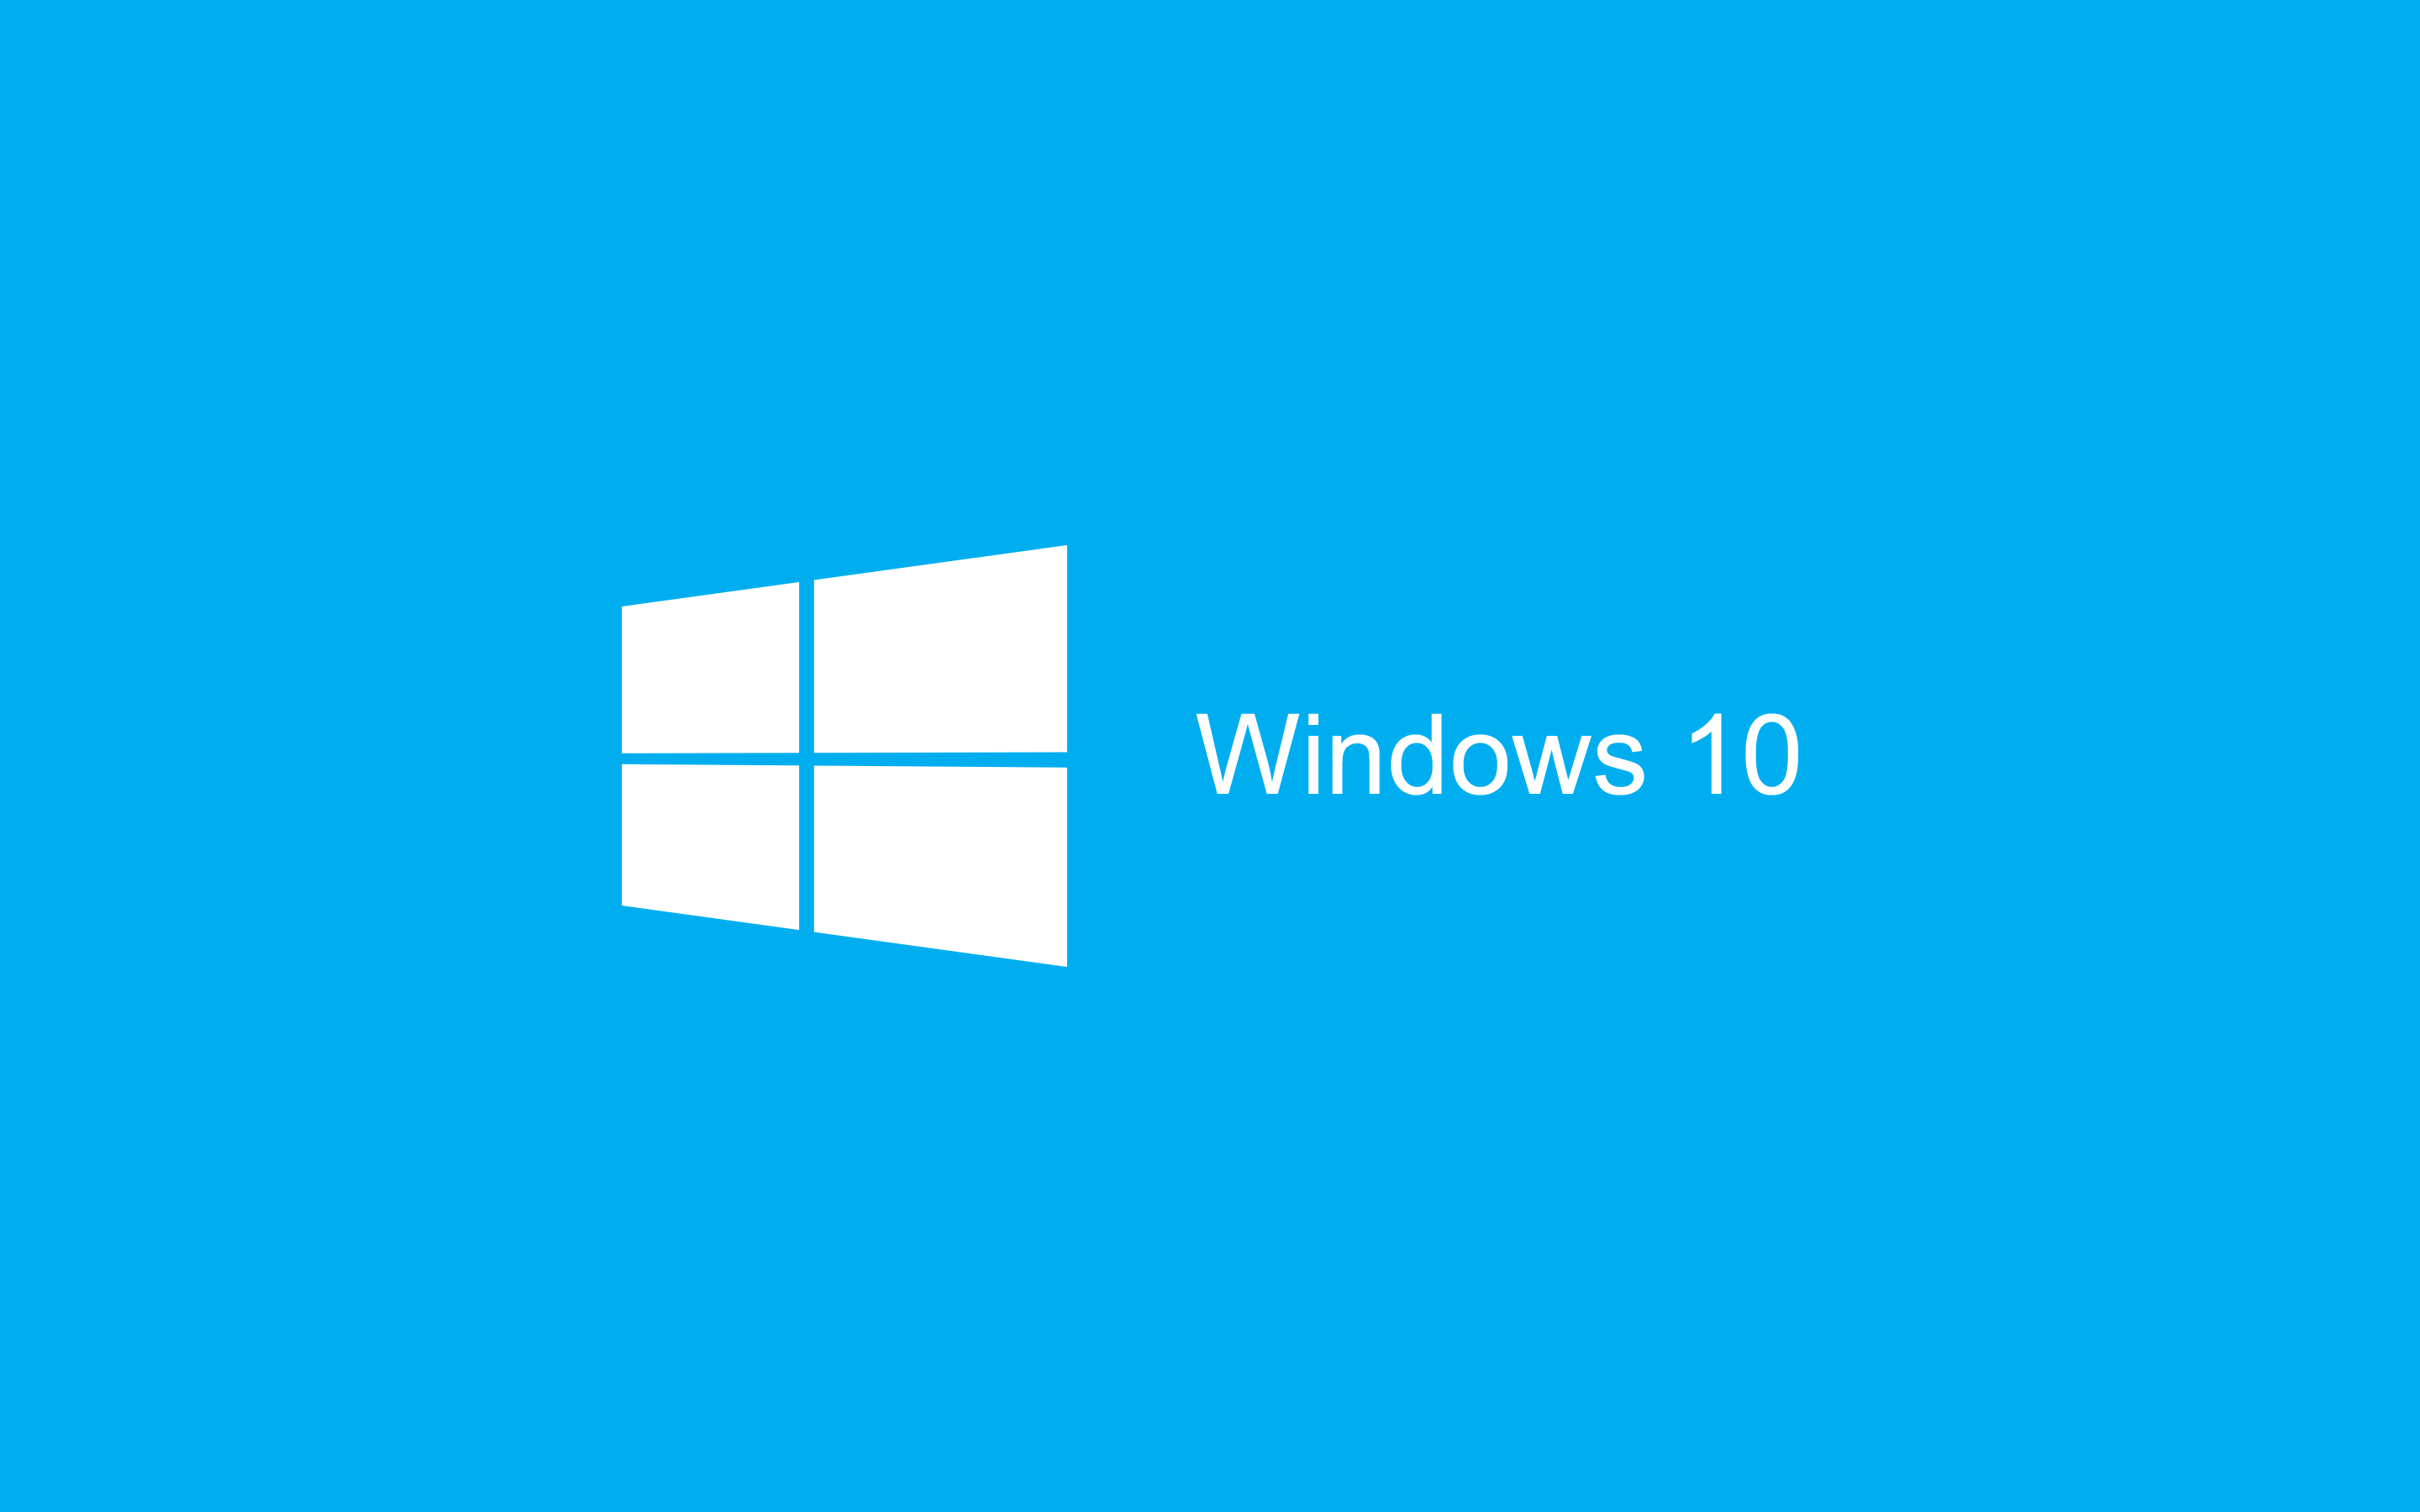 Windows 10: importanti modifiche alla barra delle applicazioni